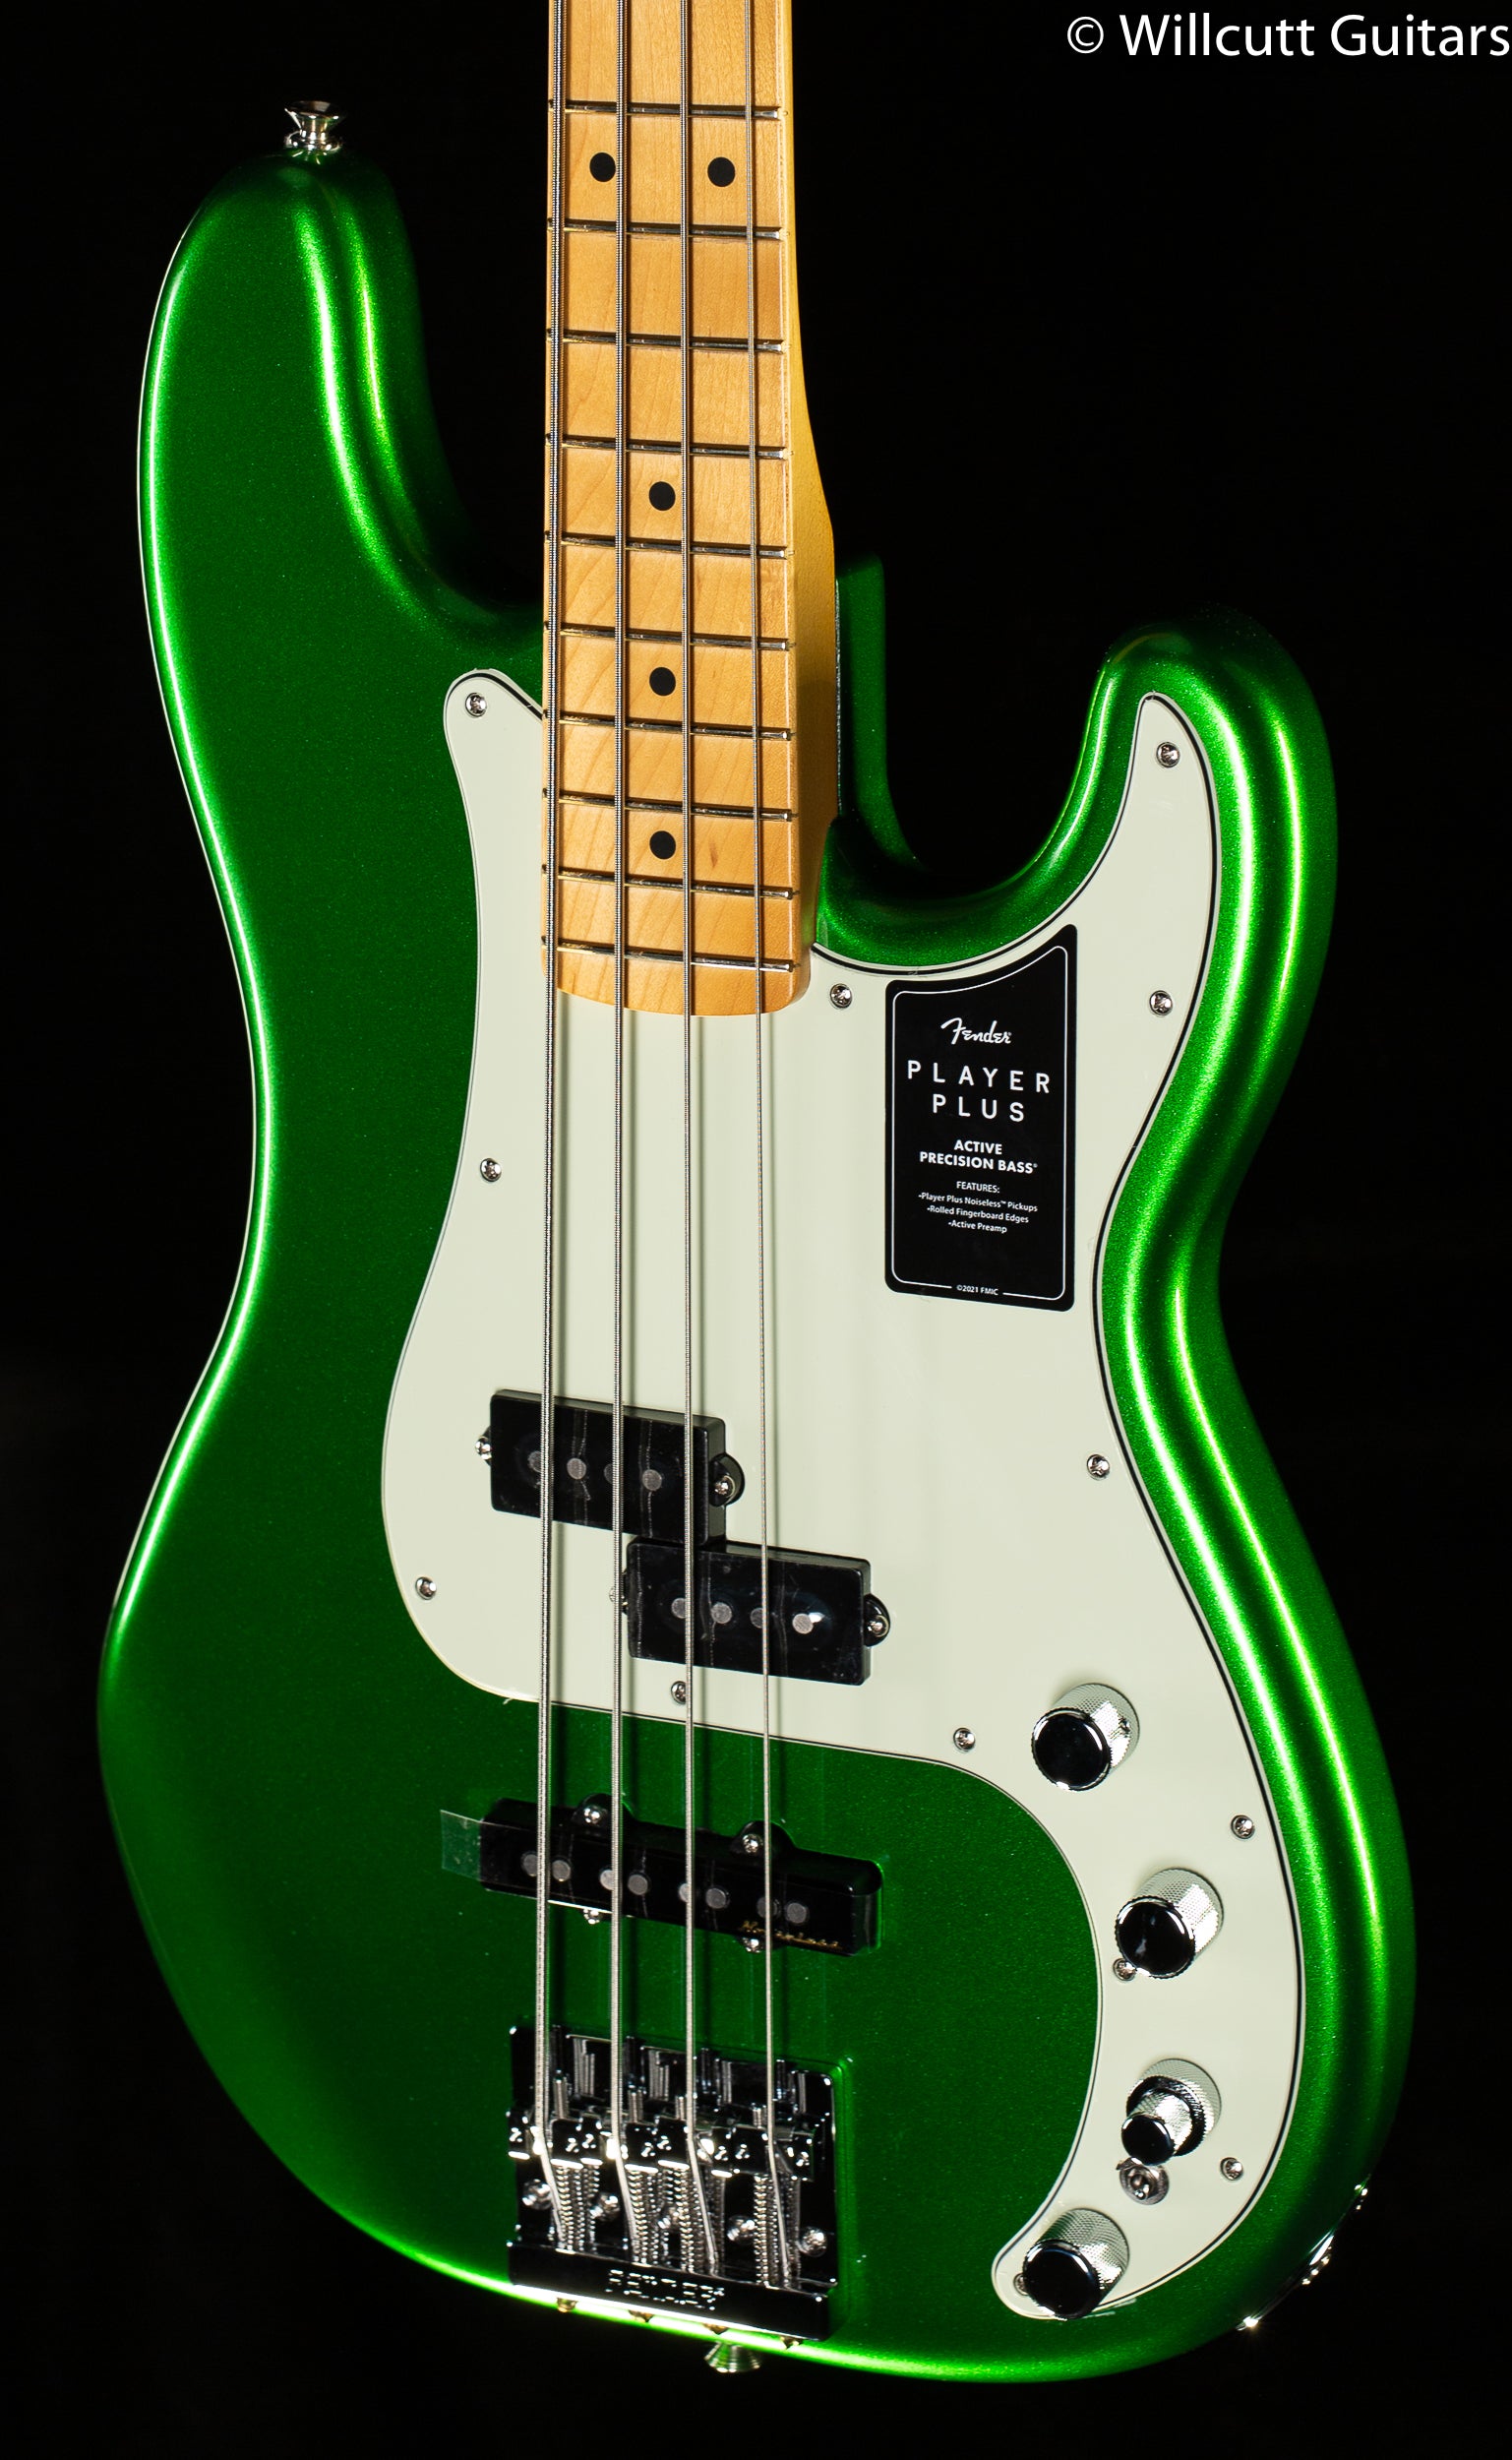 豊富なギフト Squier by Fender 40th Anniversary Jazz Bass Vintage Edition -Satin  Sea Foam Green-